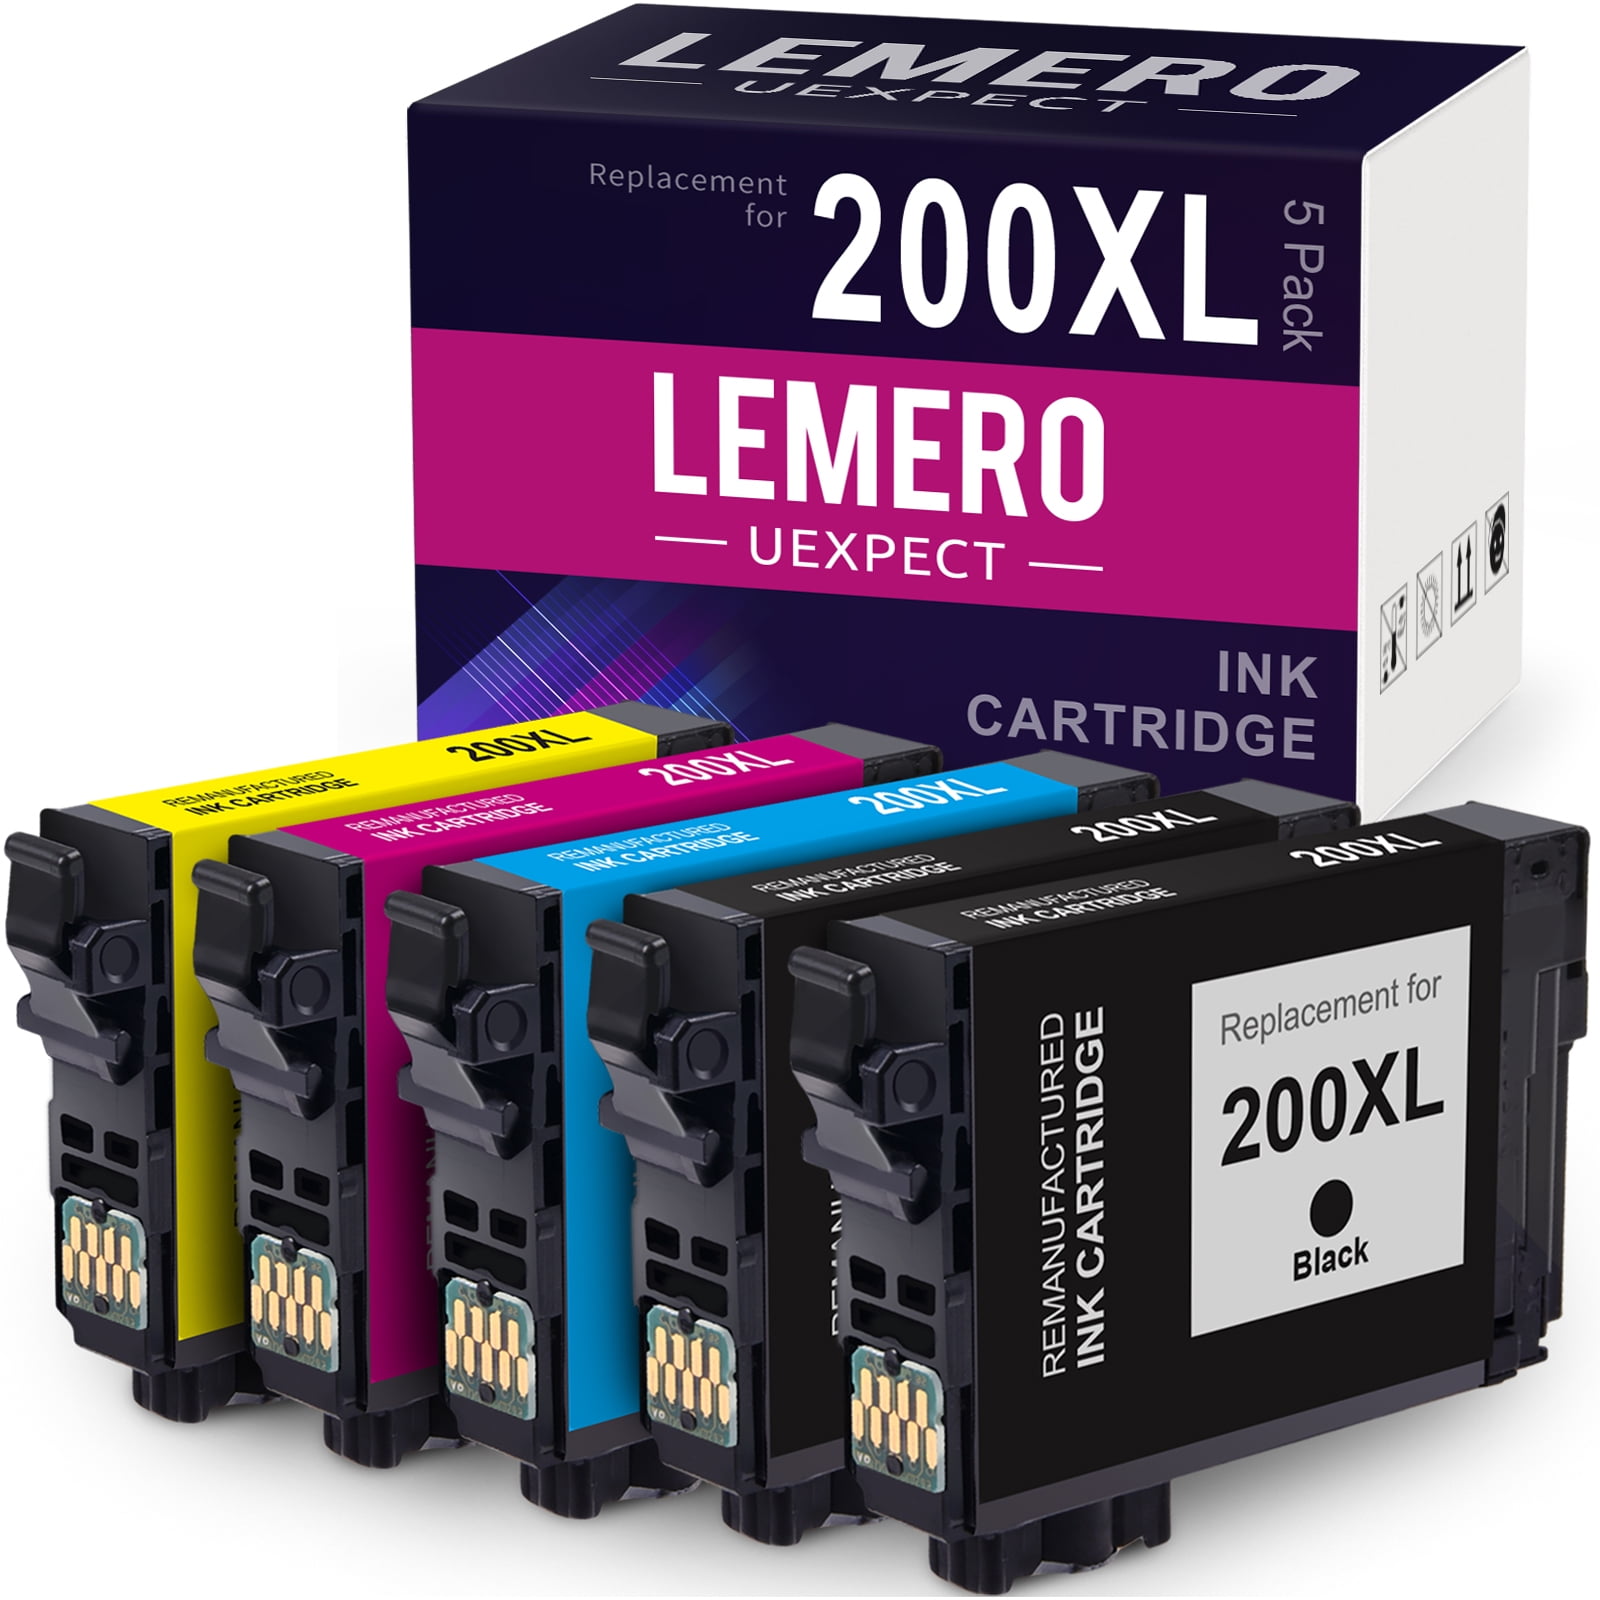 Drastisk konservativ oase 200XL Ink Cartridge for Epson 200 XL Ink for Expression XP-200 XP-300 XP-310  XP-400 XP-410 Workforce WF-2520 WF-2530 Printer(2 Black, 1 Cyan, 1 Magenta,  1 Yellow, 5 Pack) - Walmart.com